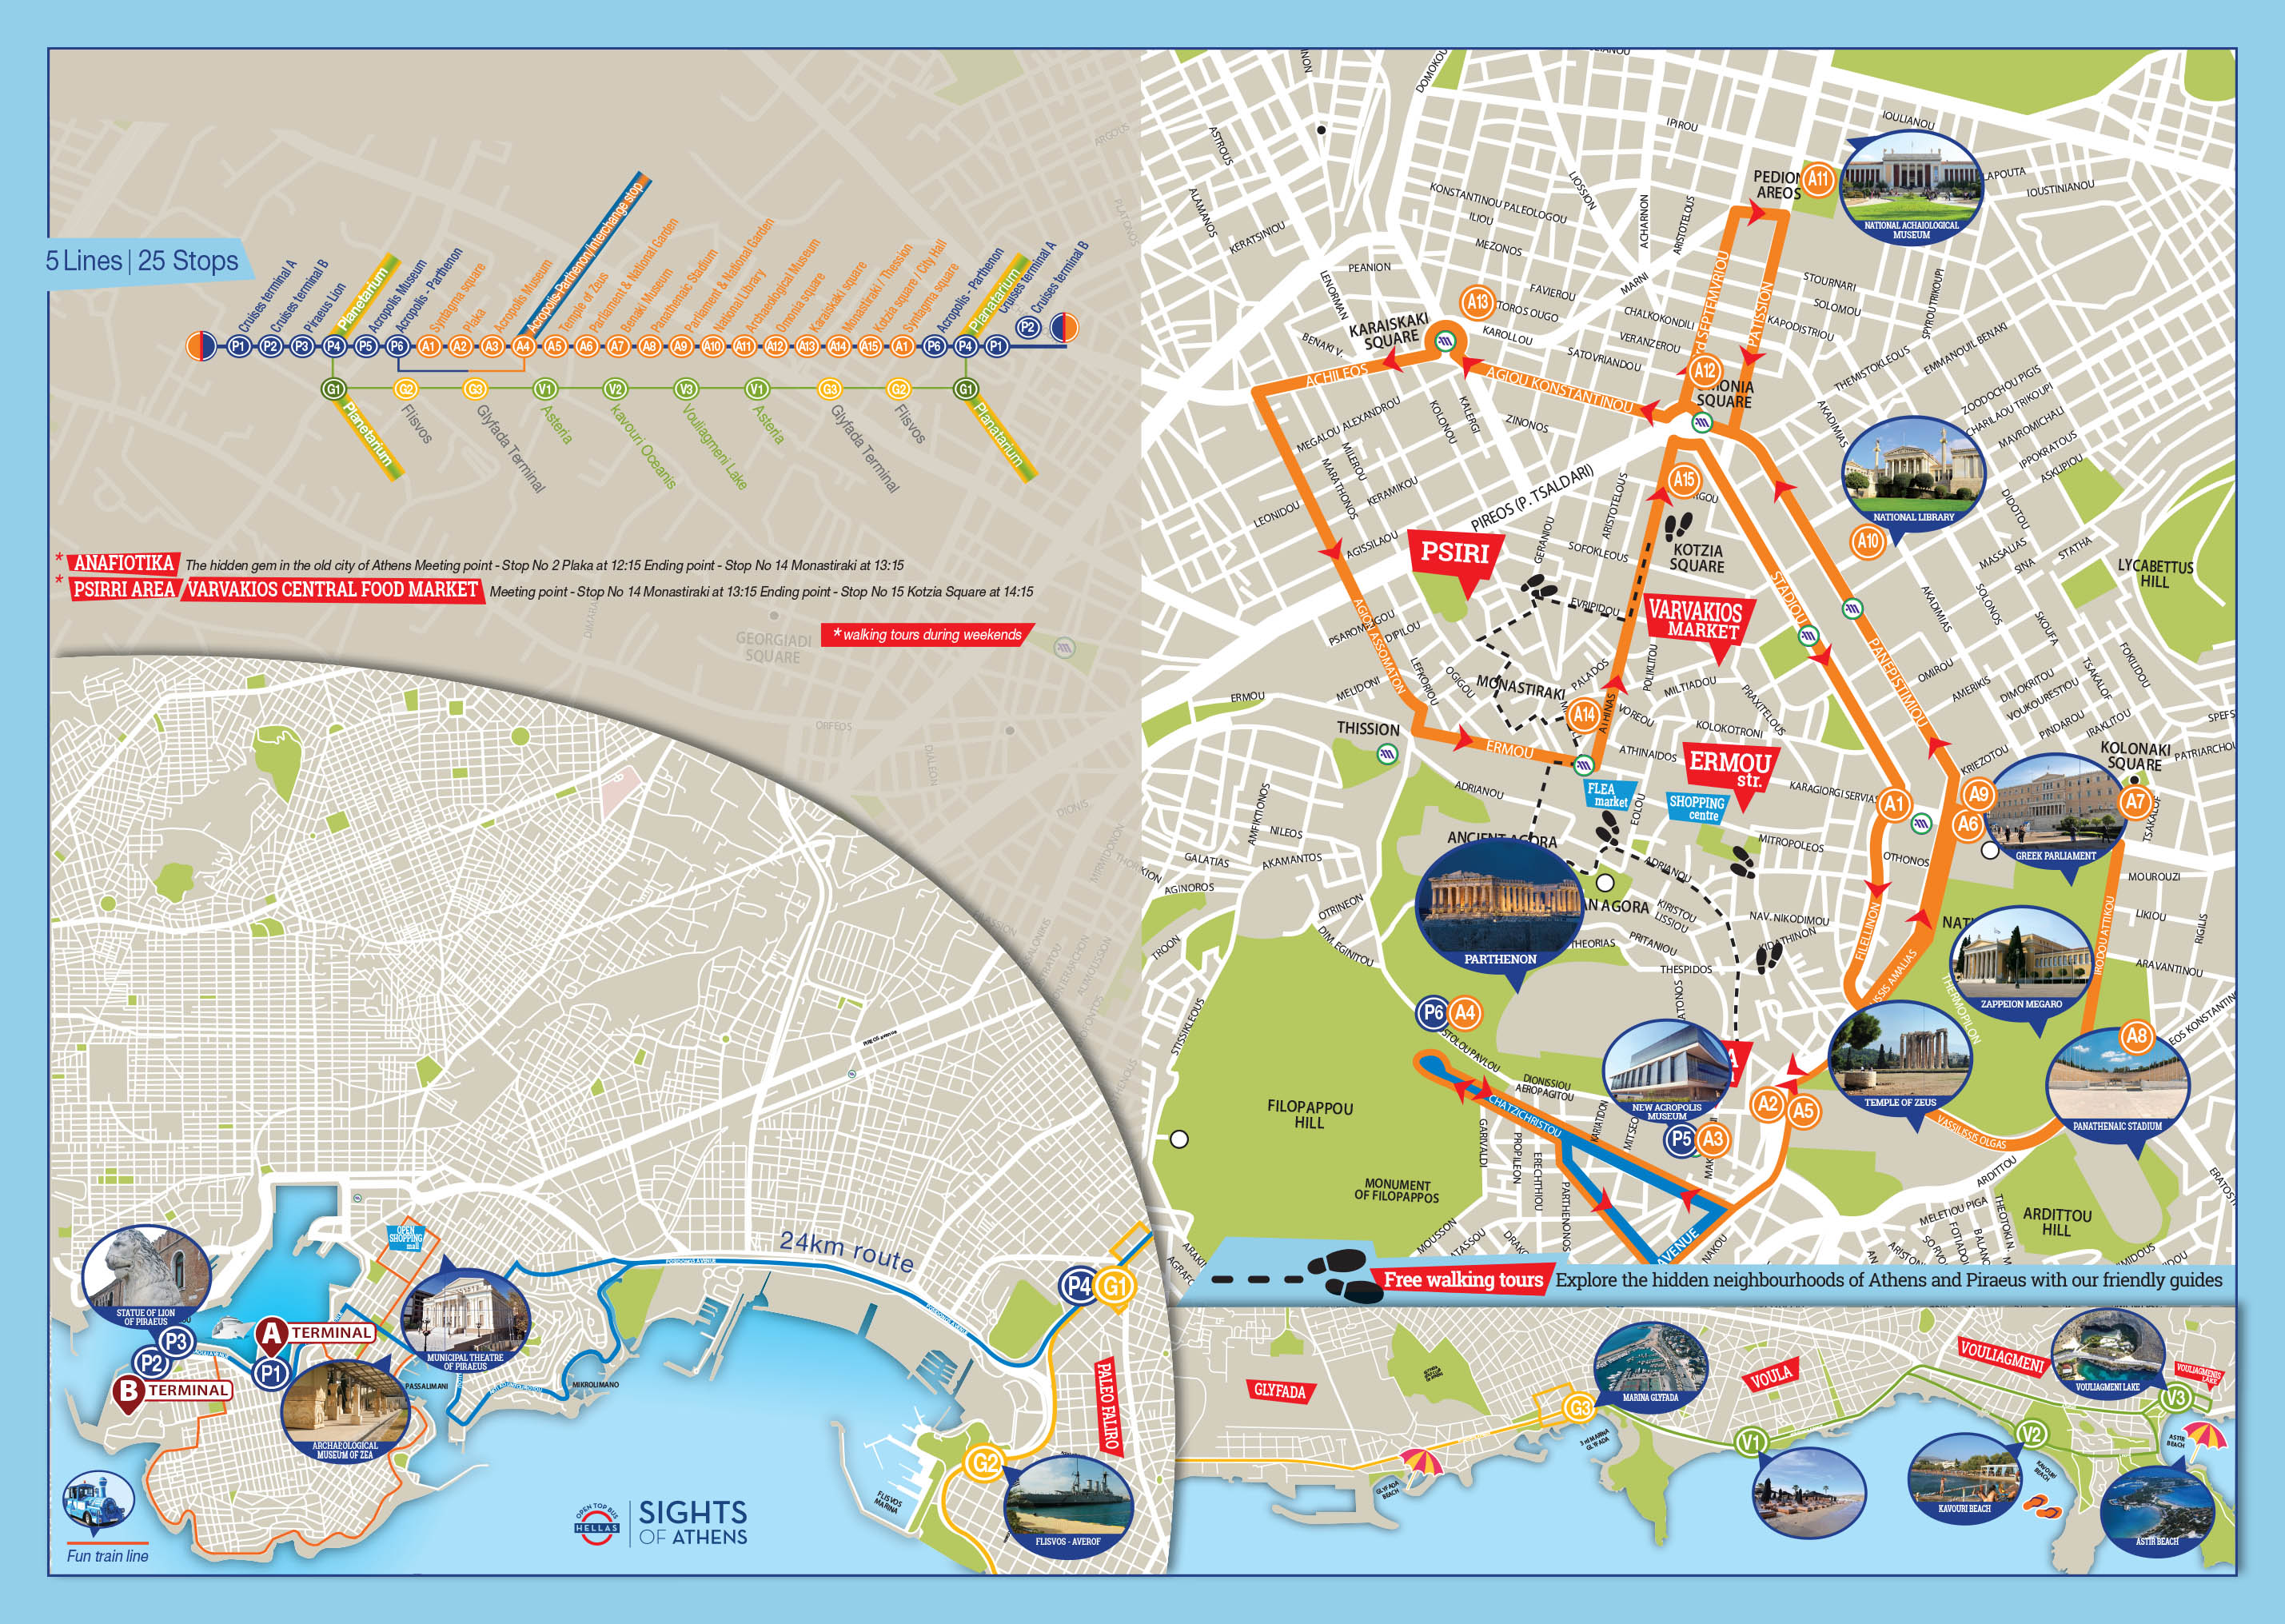 Ideen zu walking touren und Infos zum öffentlichen Verkehr, bereitgestellt von http://www.tripindicator.com